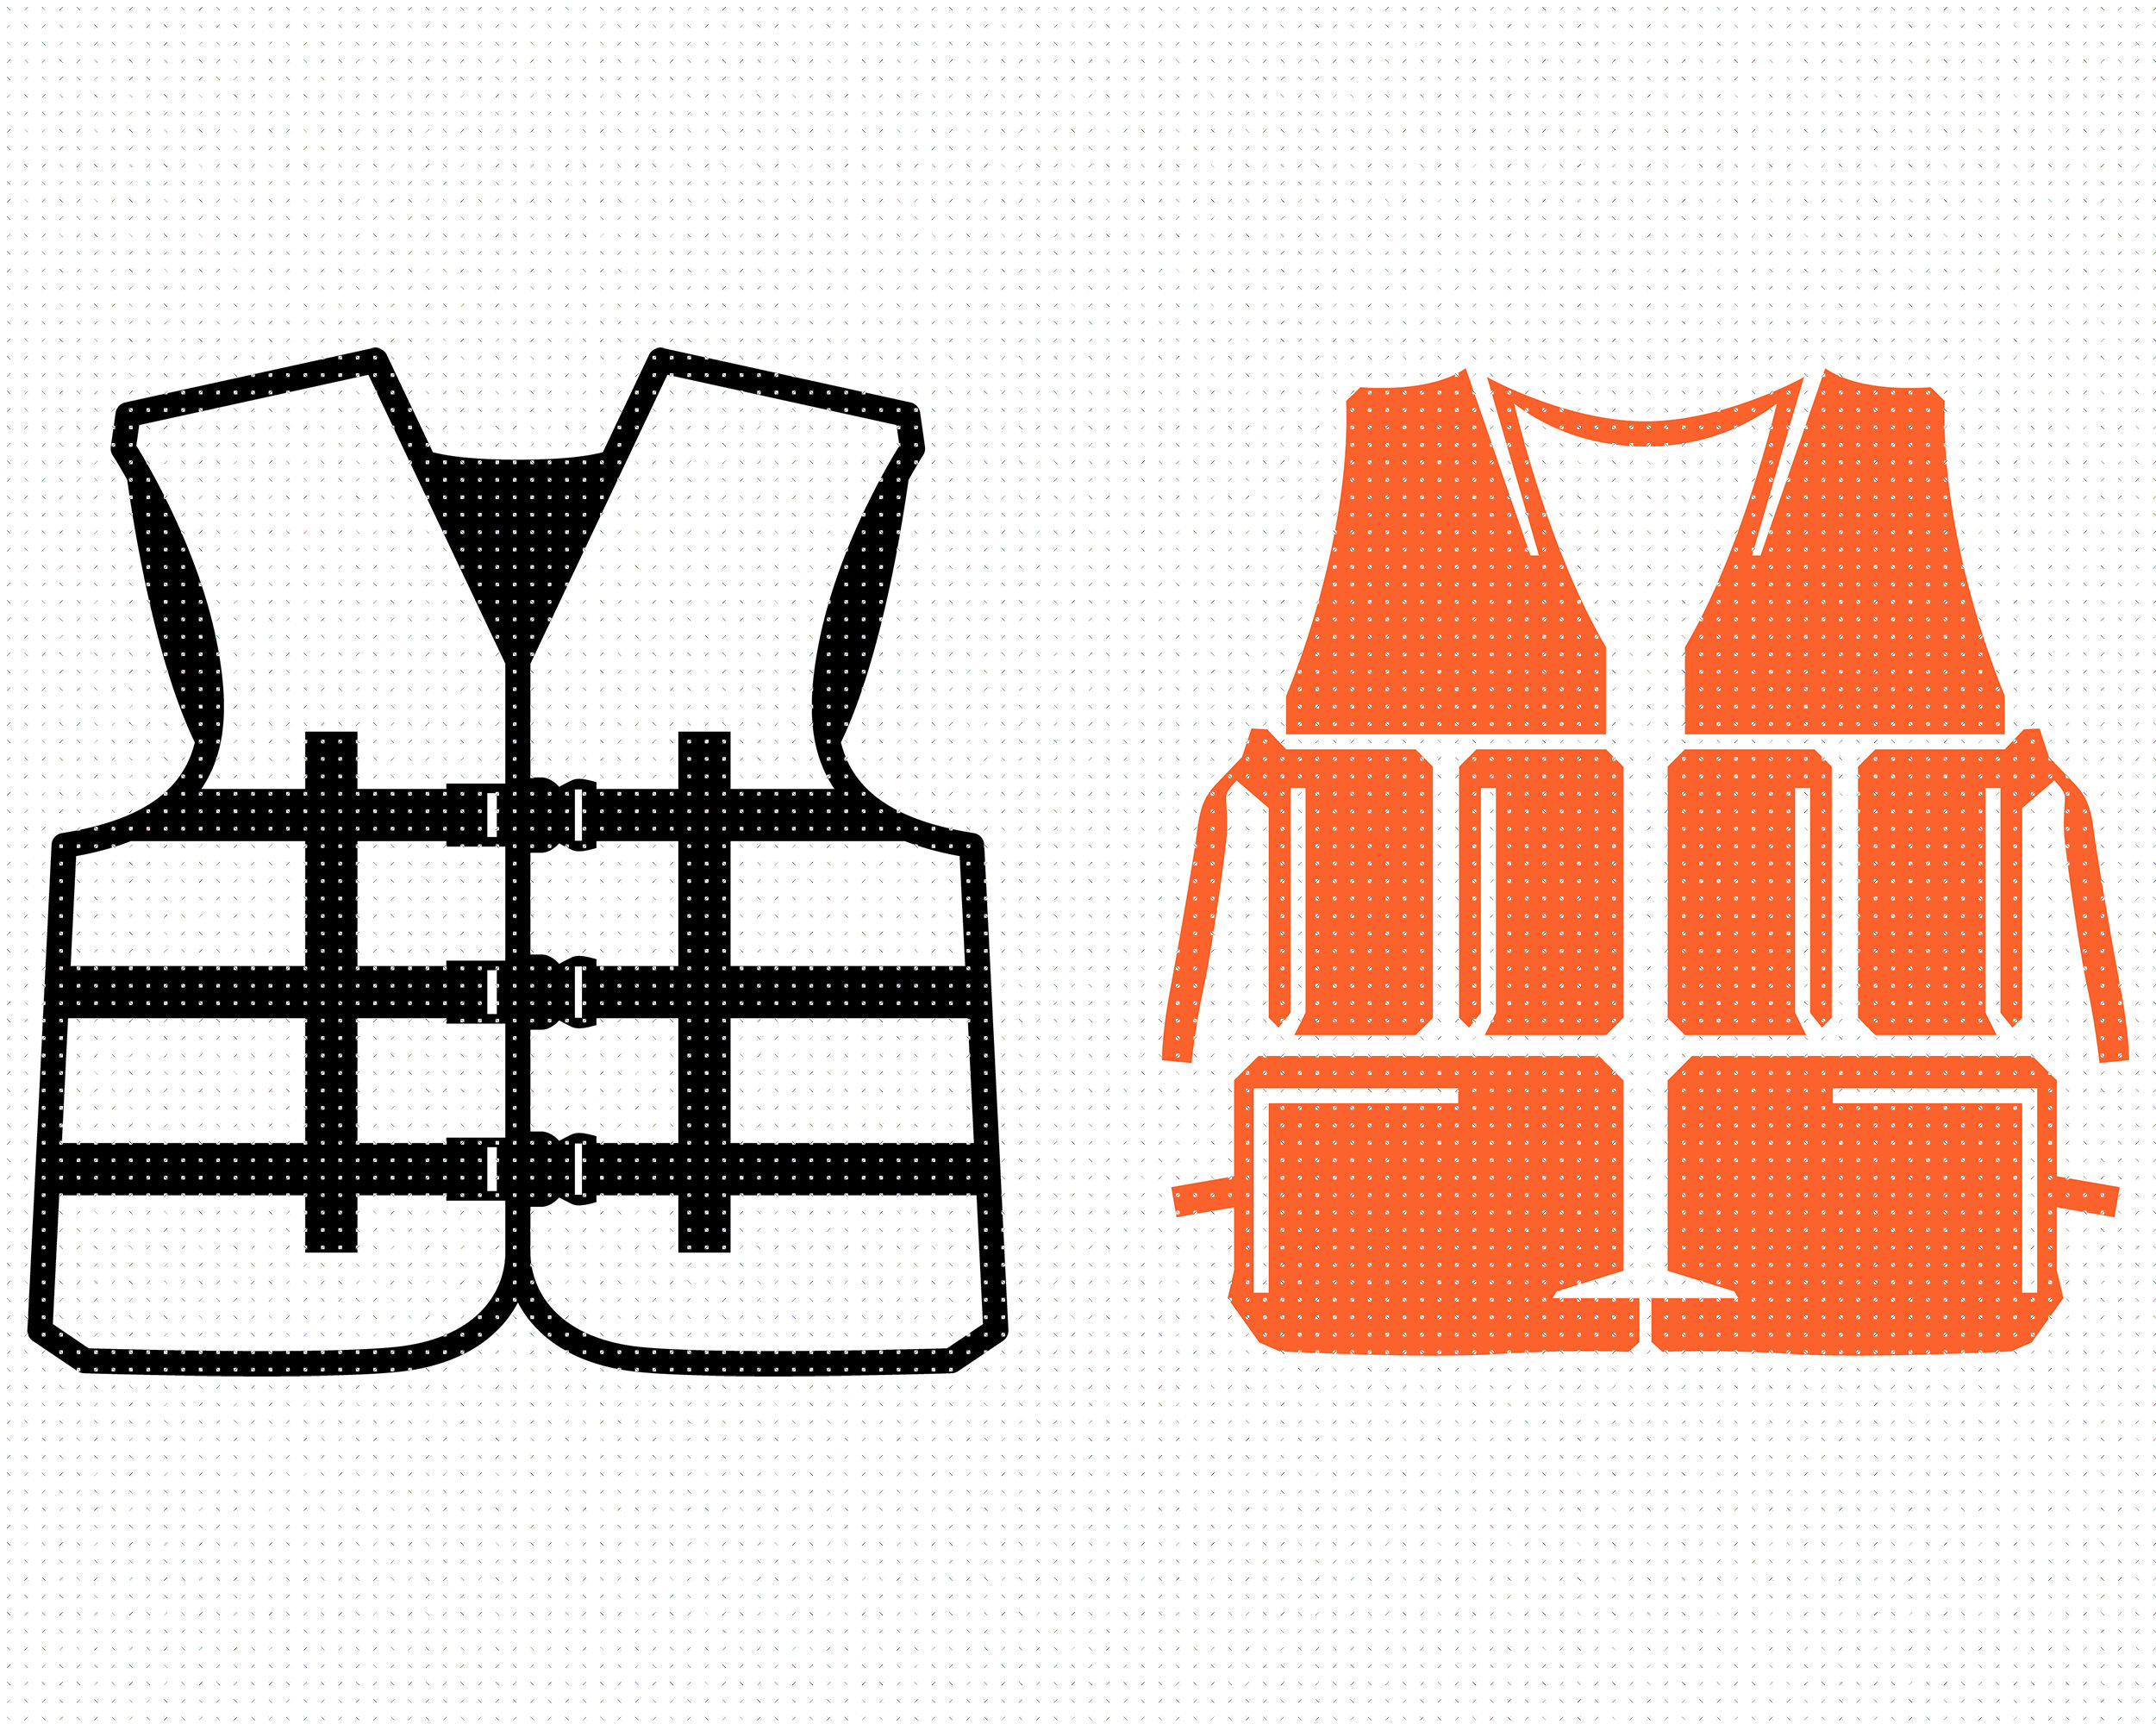 monogram inflatable vest